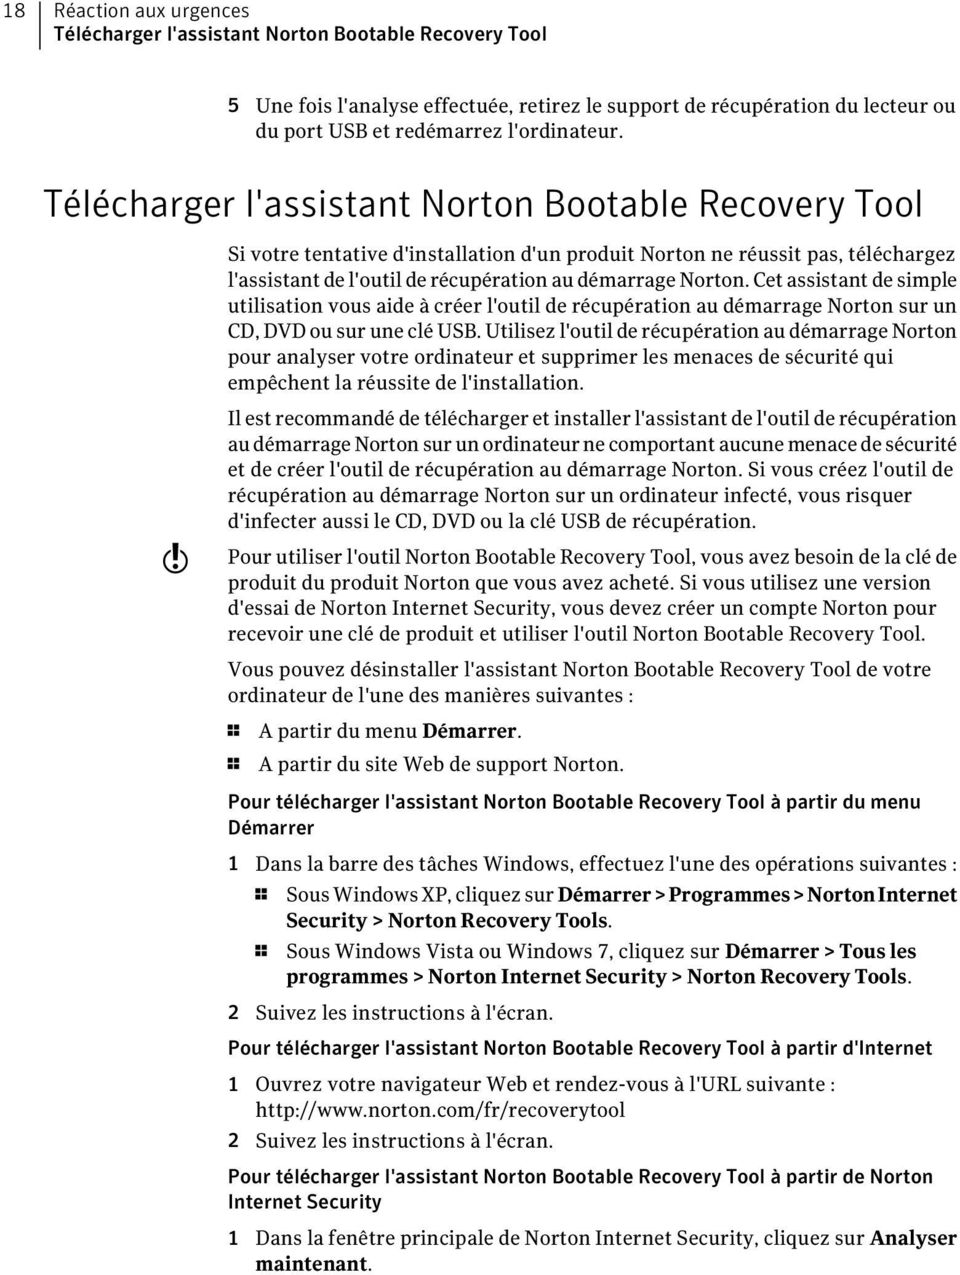 Cet assistant de simple utilisation vous aide à créer l'outil de récupération au démarrage Norton sur un CD, DVD ou sur une clé USB.